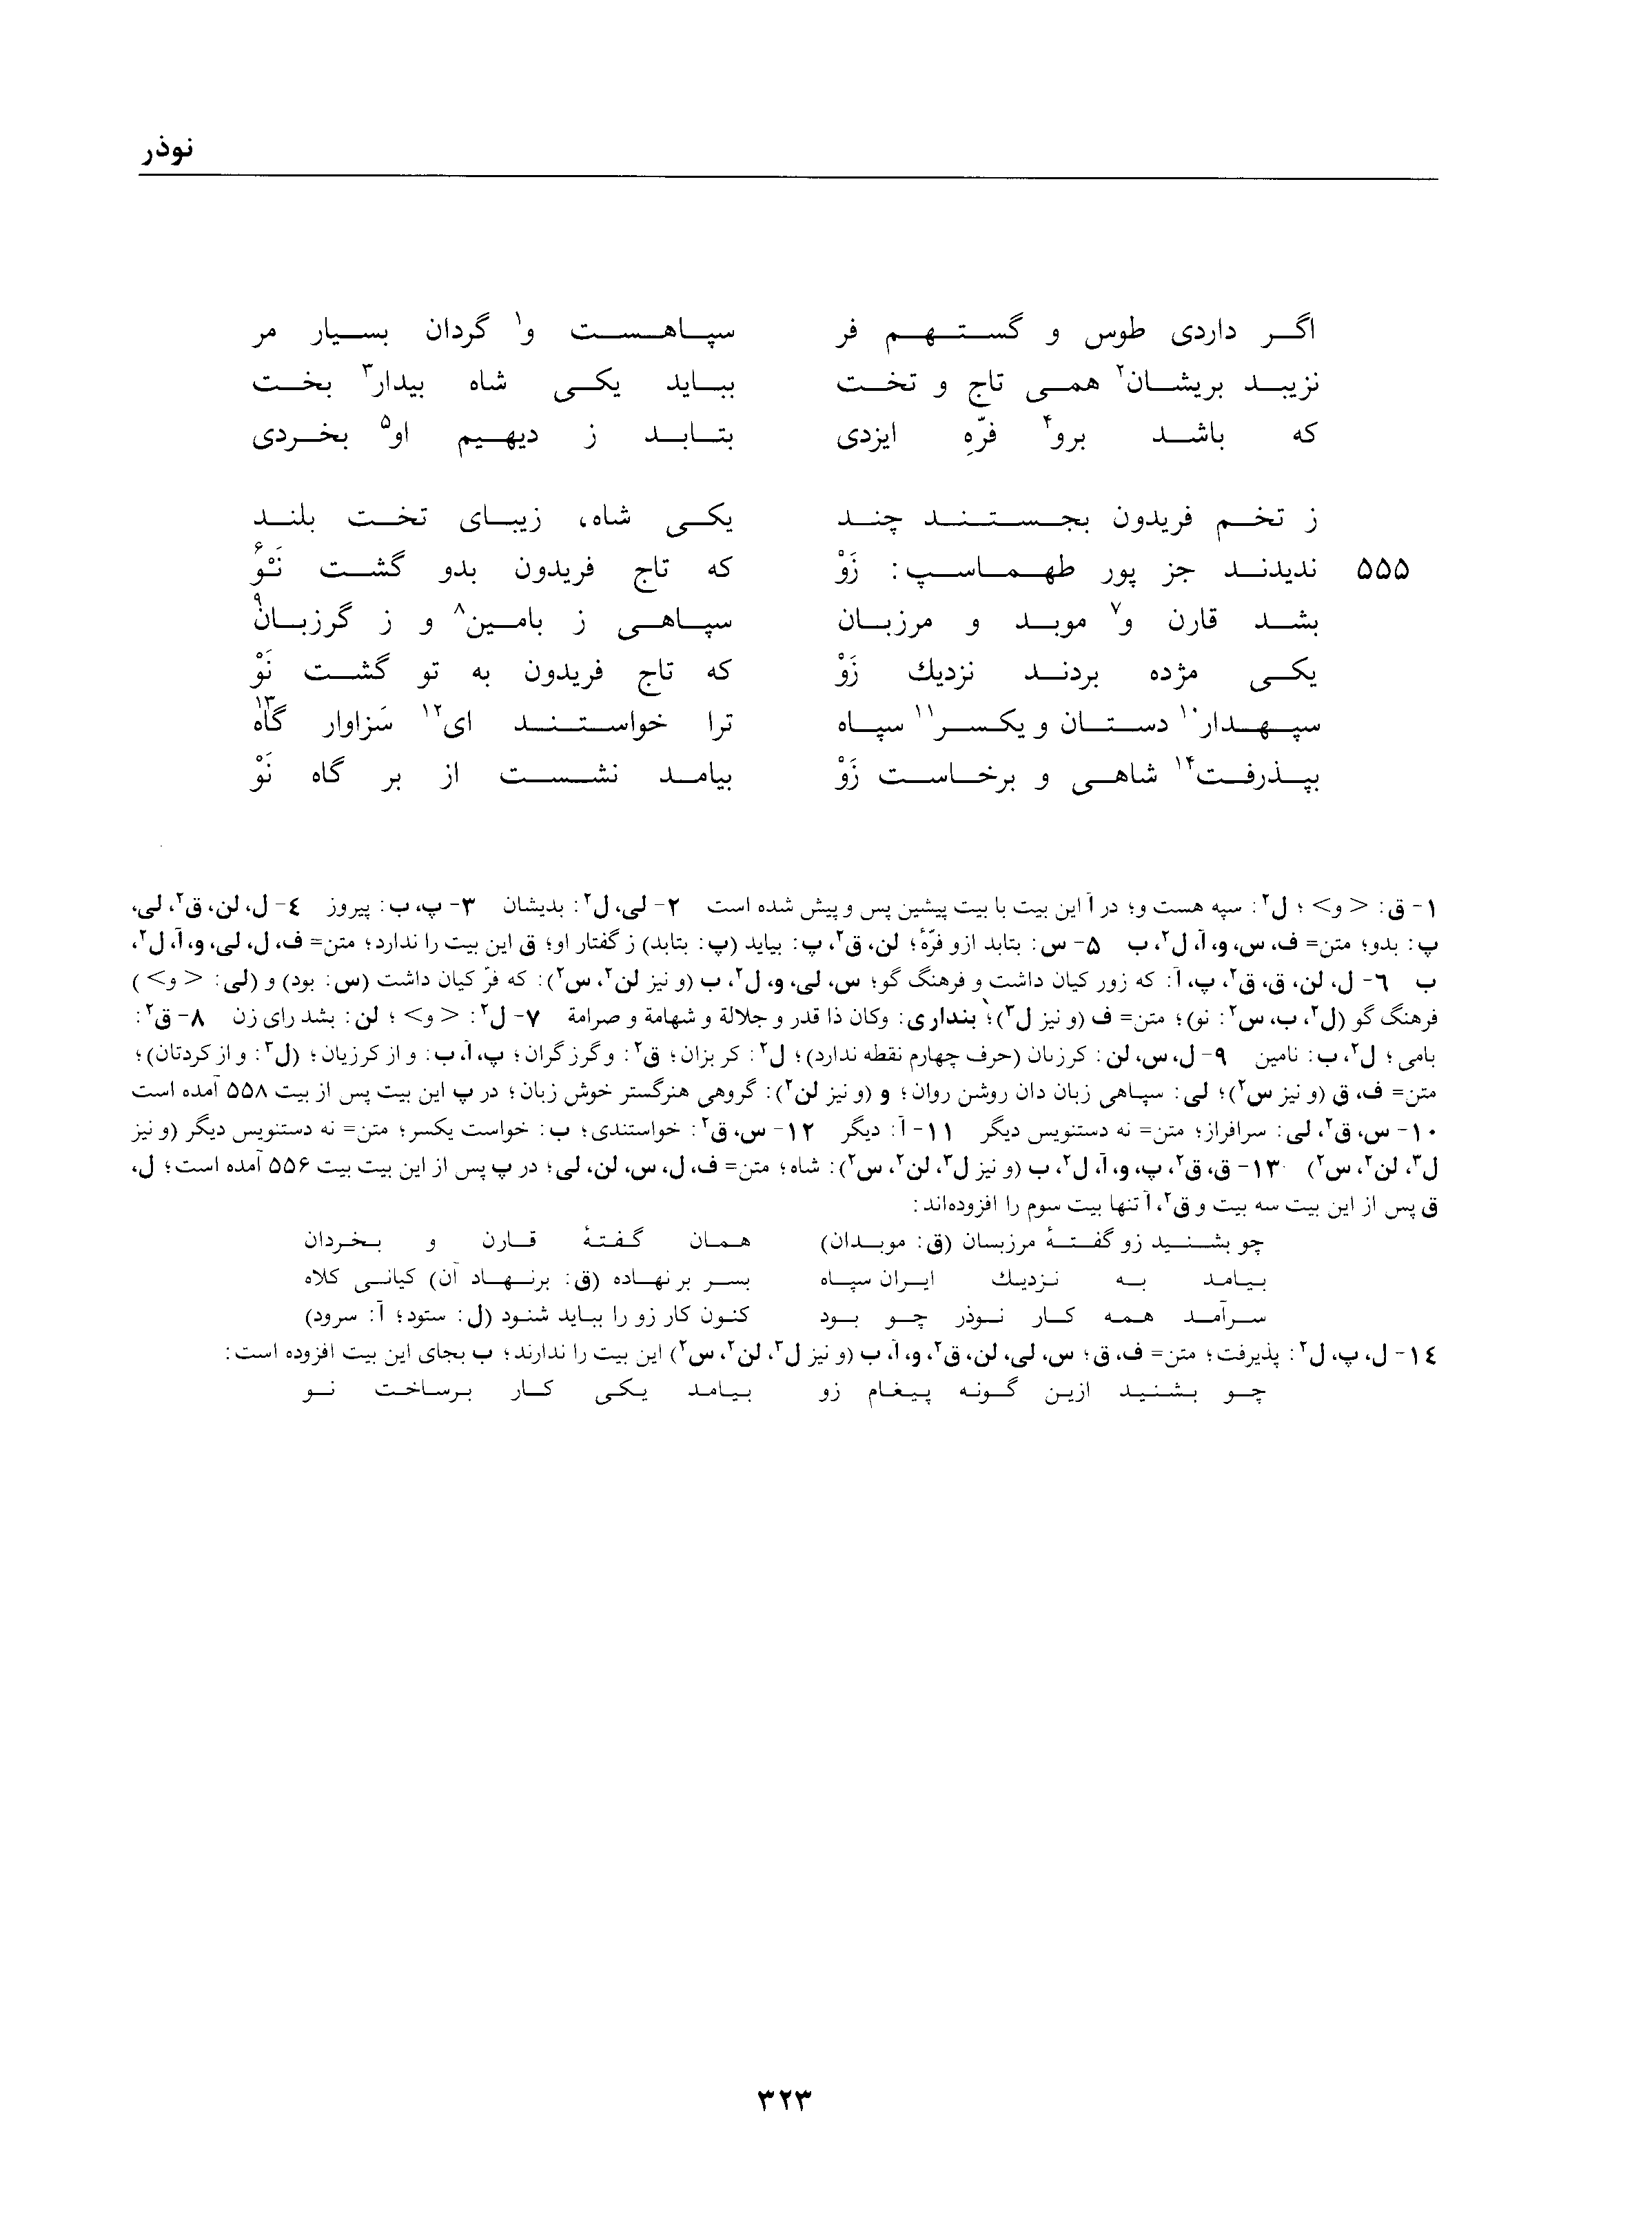 vol. 1, p. 323